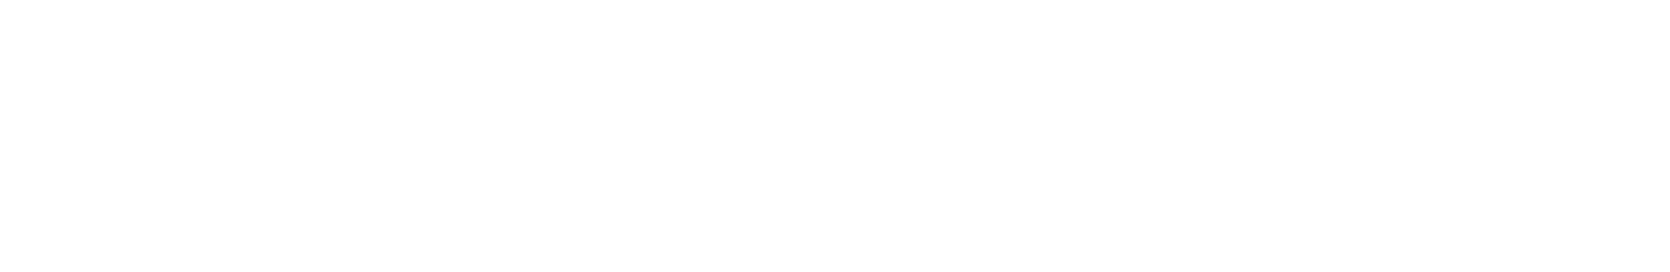 Georg Bischof Produktion, Vertrieb & Logistik GmbH Logo